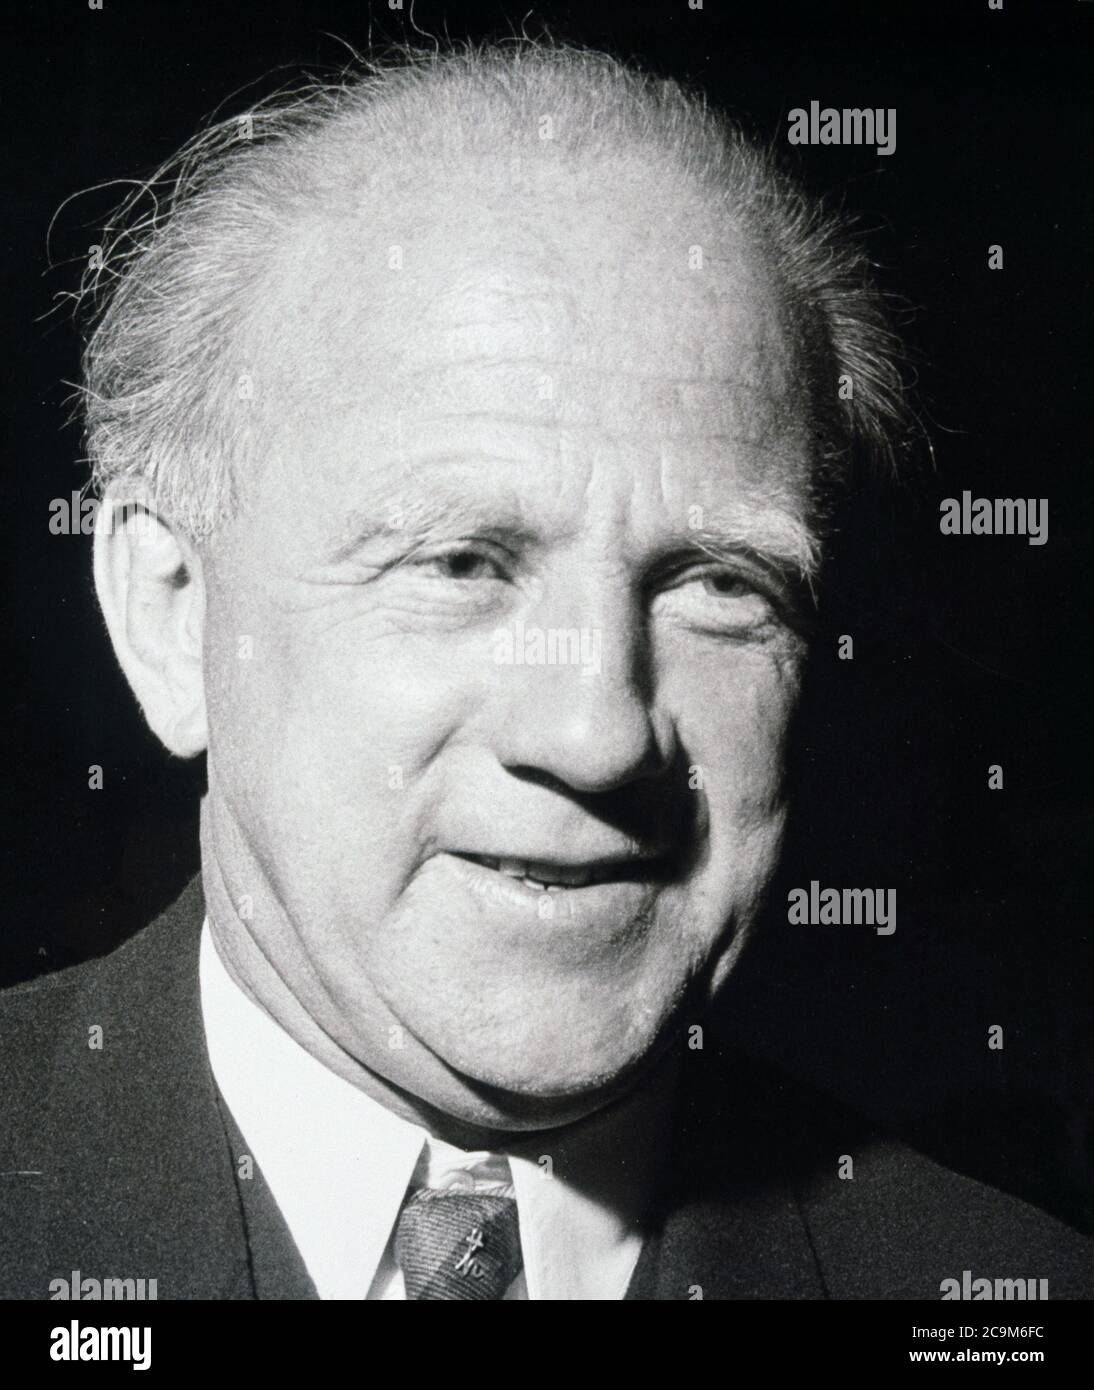 HEISENBERG, WERNER KARL. FISICO ALEMAN. 1901-1976. PREMIO NOBEL DE FISICA EN EL AÑO 1932. Stock Photo